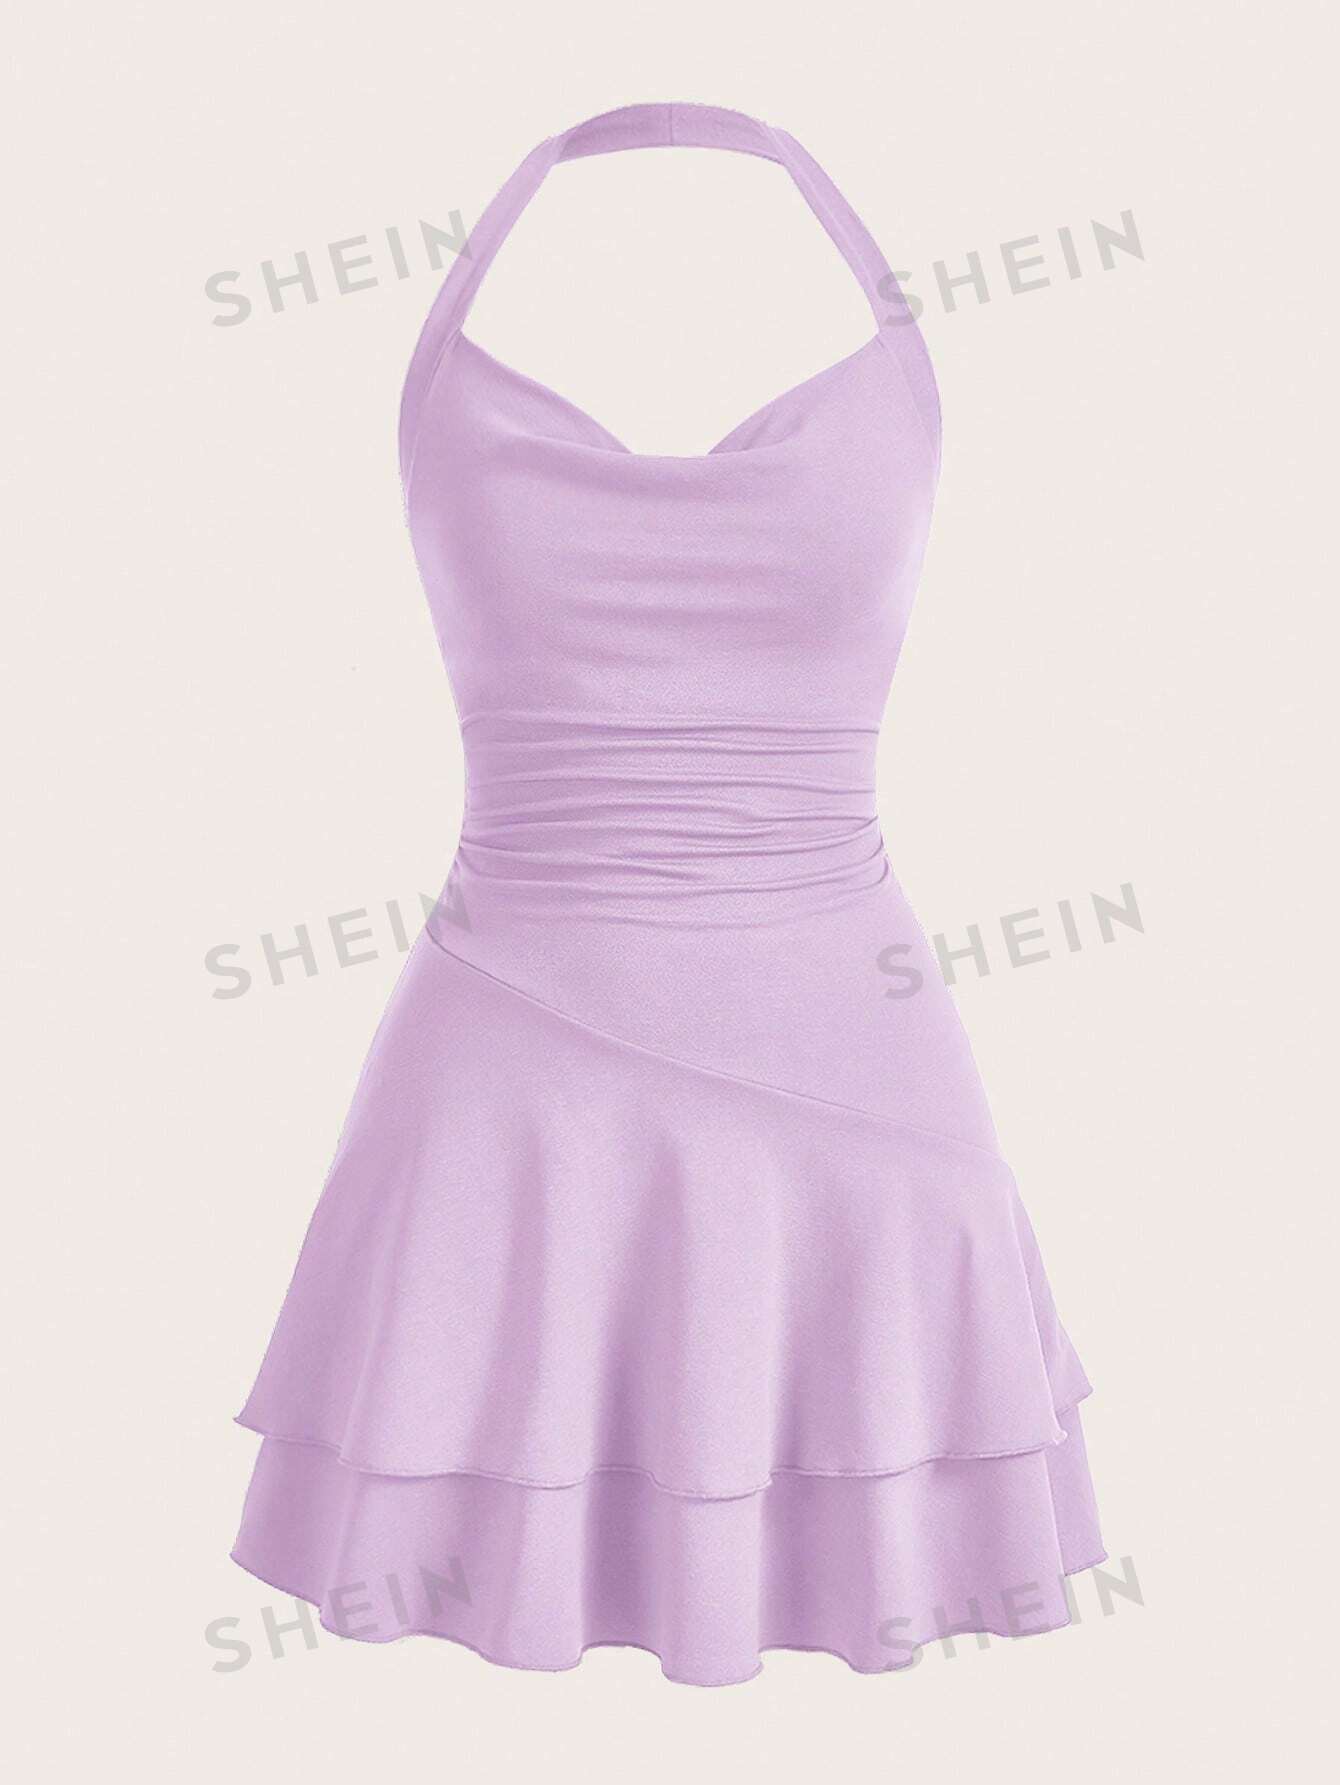 SHEIN MOD однотонное женское платье с бретелькой на шее и многослойным подолом, сиреневый фиолетовый